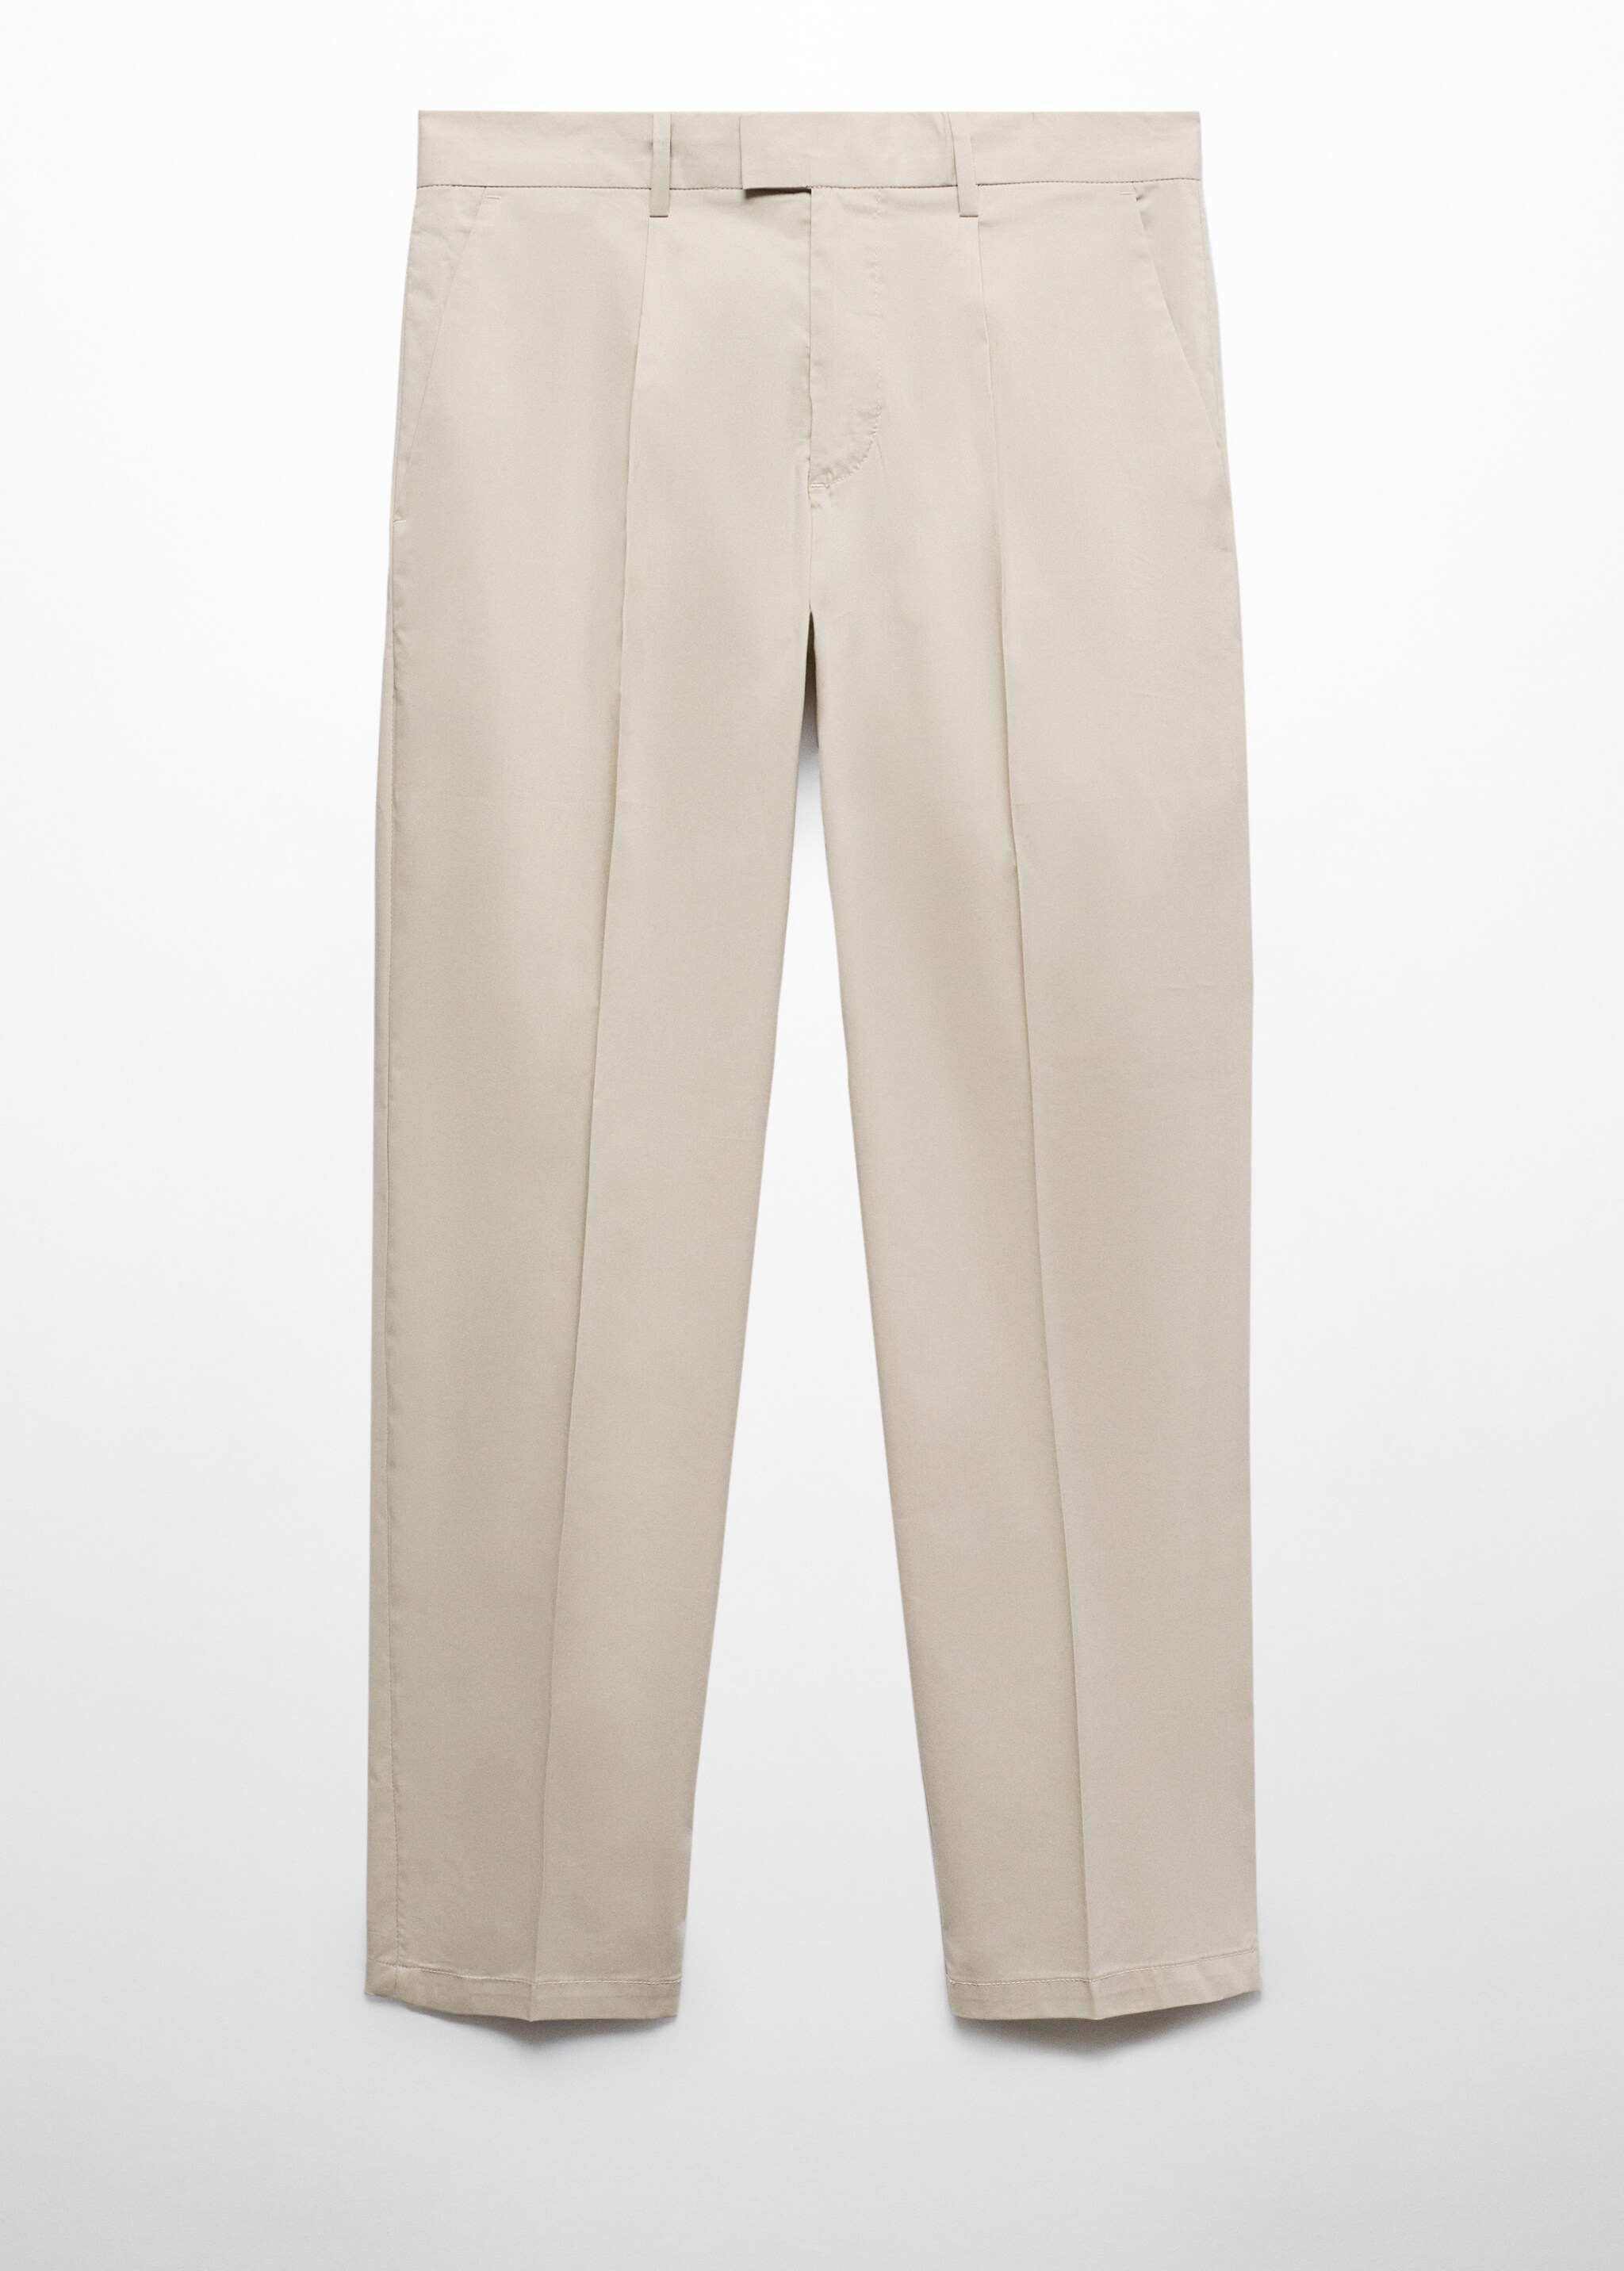 Pantalón algodón slim fit pinzas - Artículo sin modelo